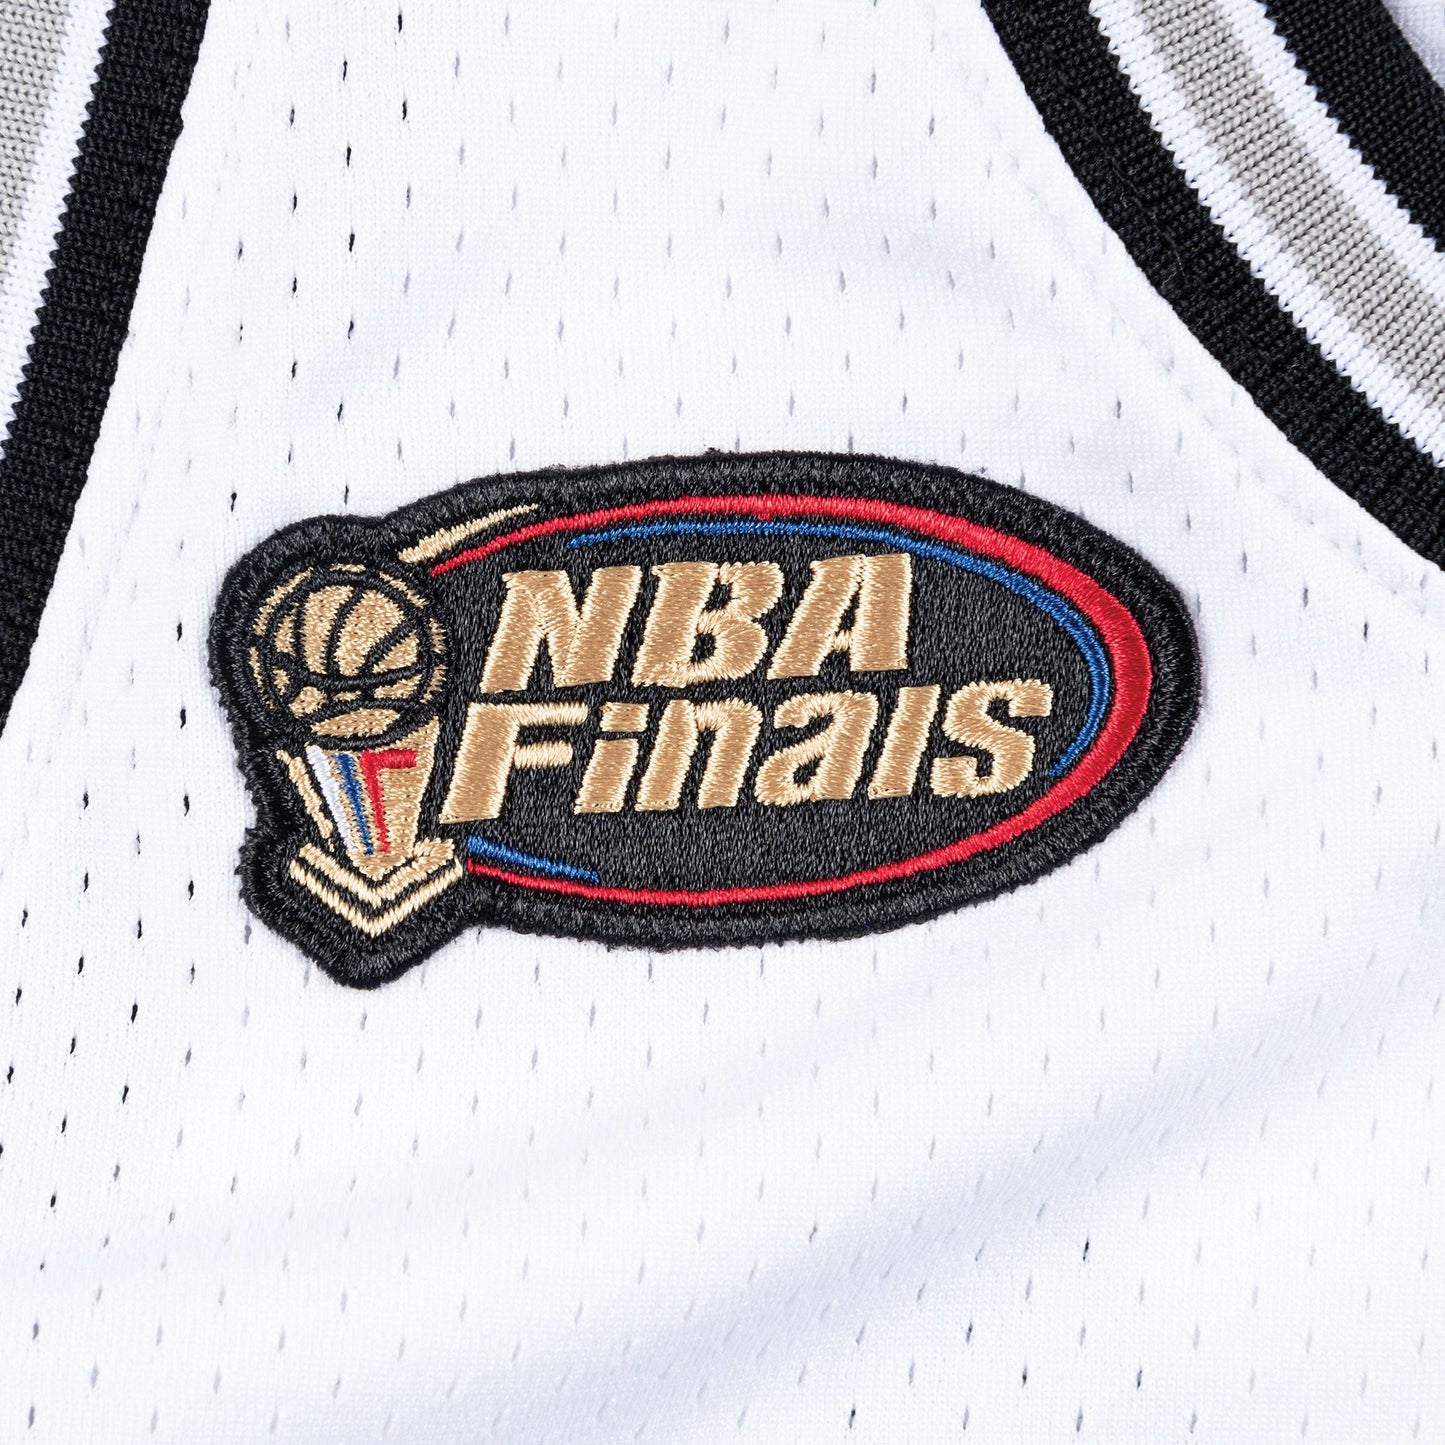 Authentic Jersey San Antonio Spurs Home Finals1998-99 Tim Duncan